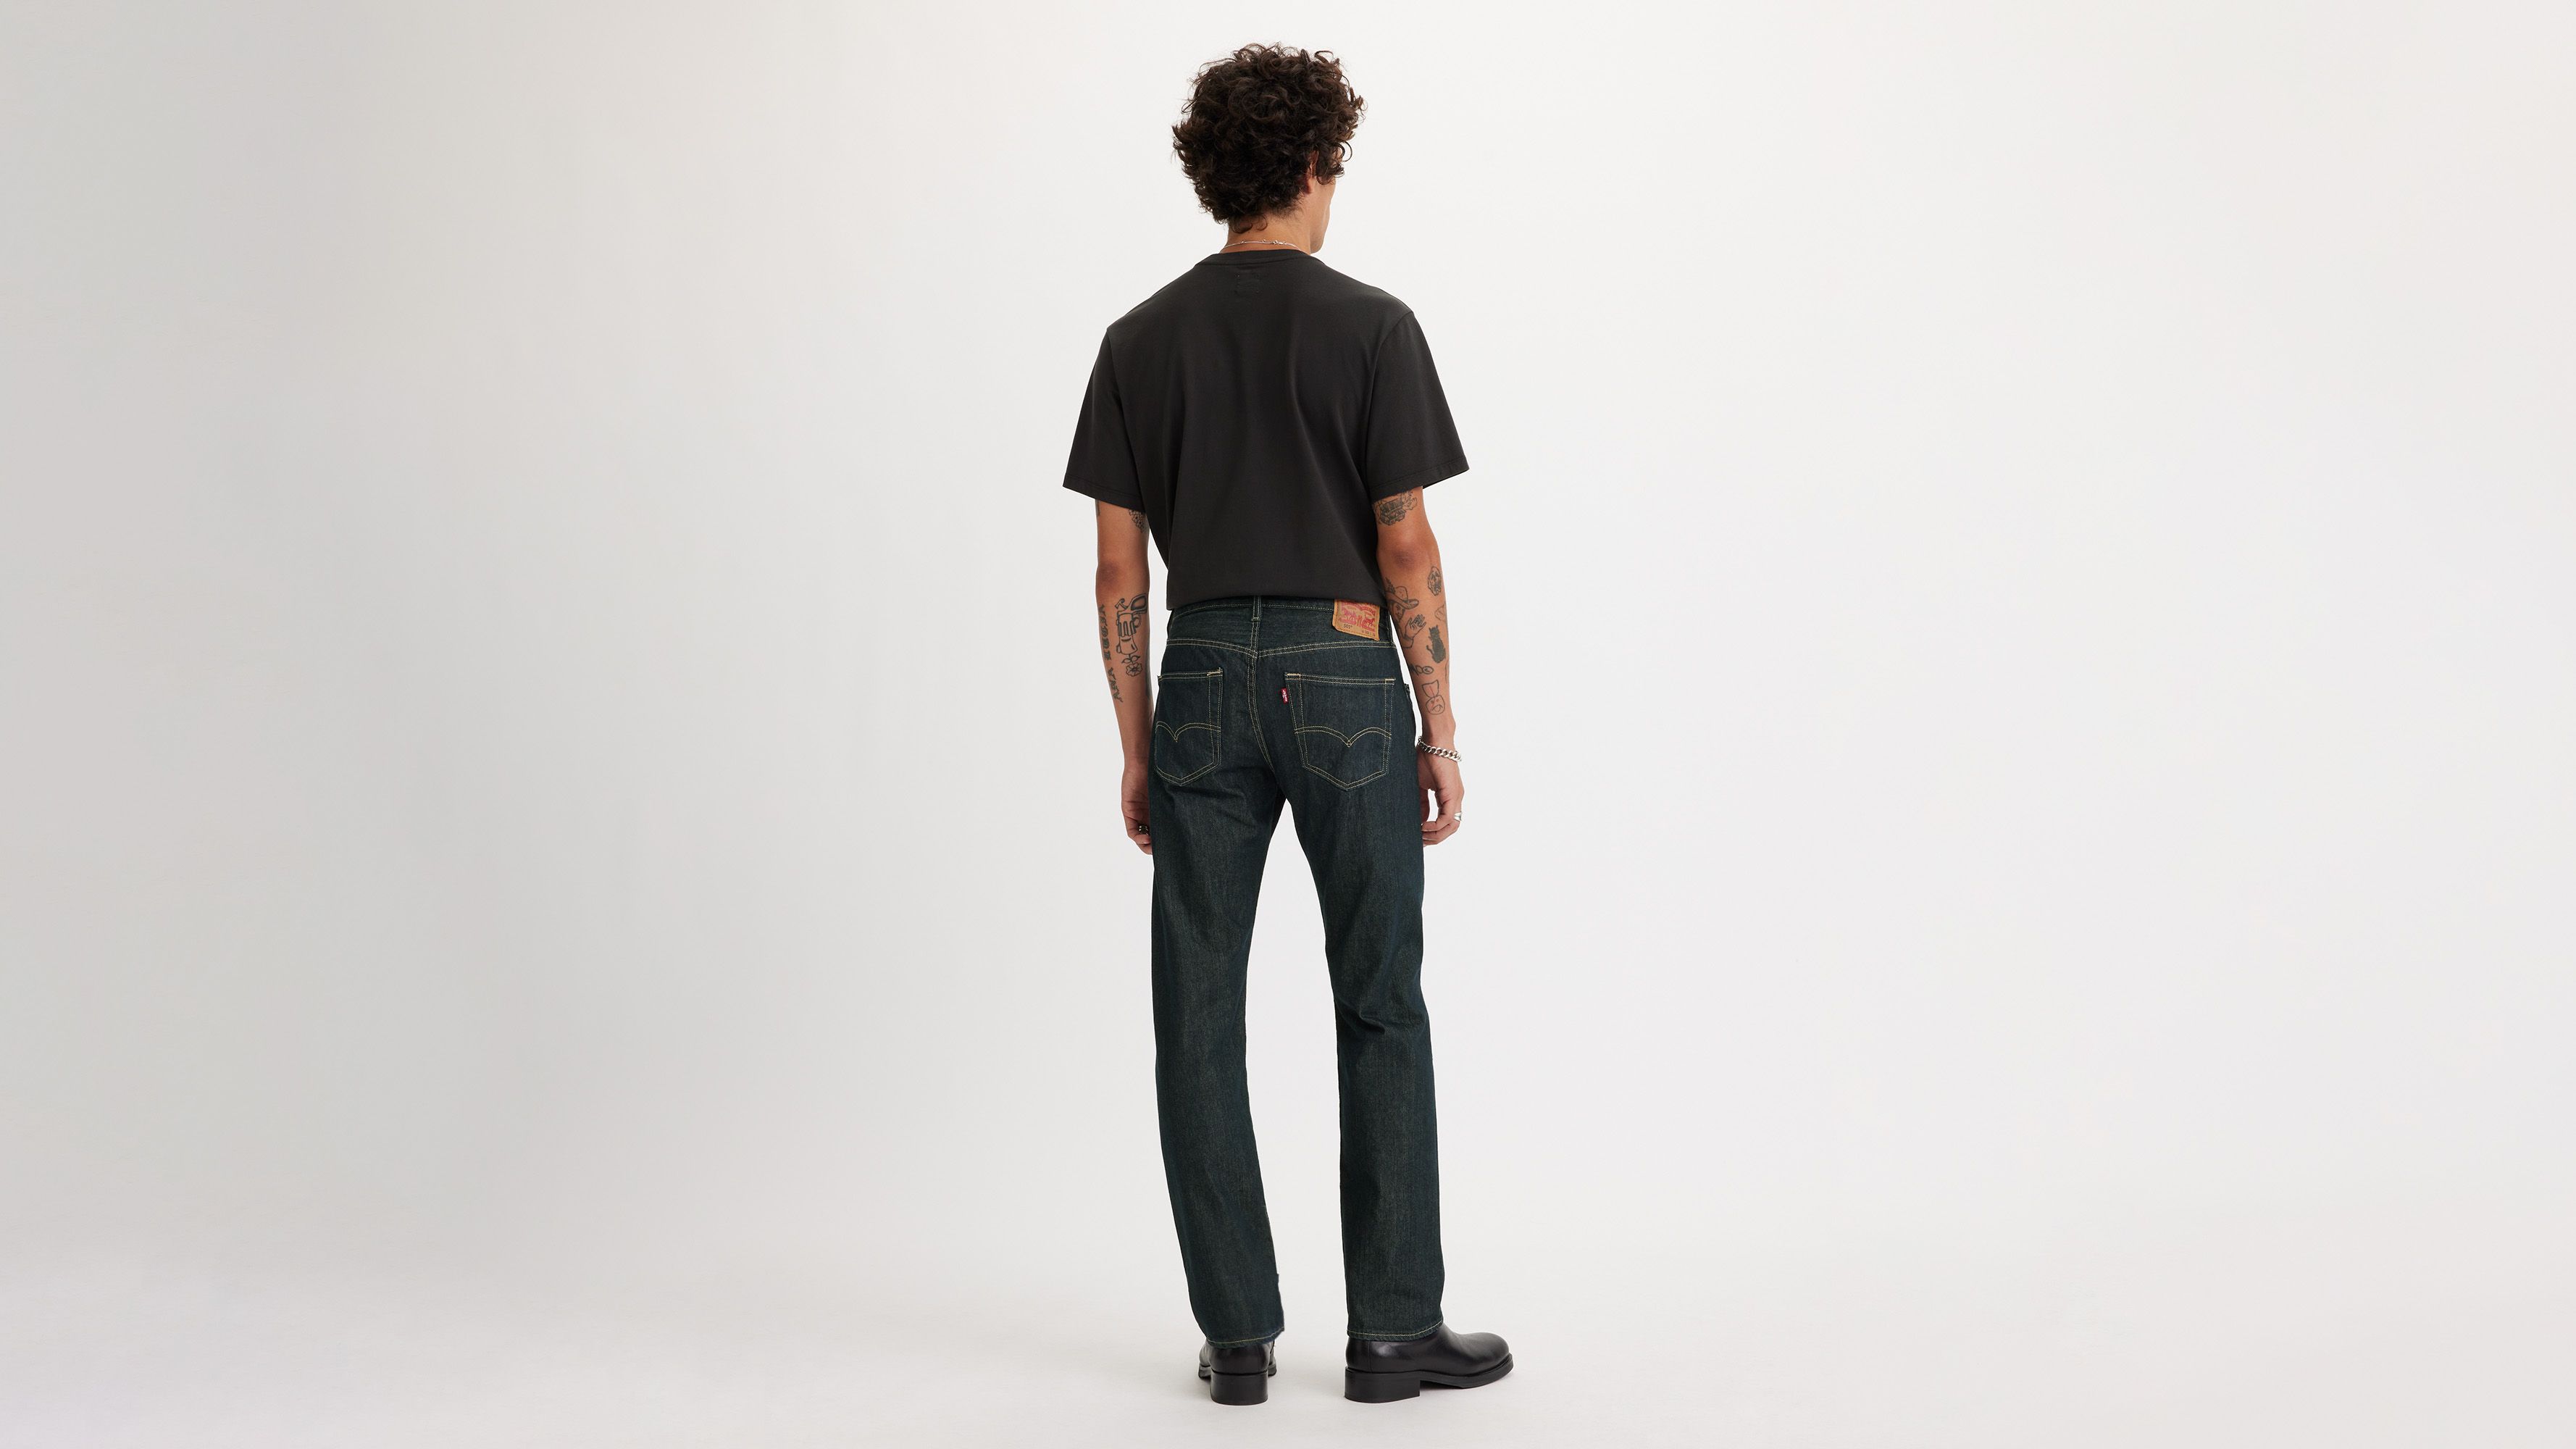 levis 501 black mens jeans